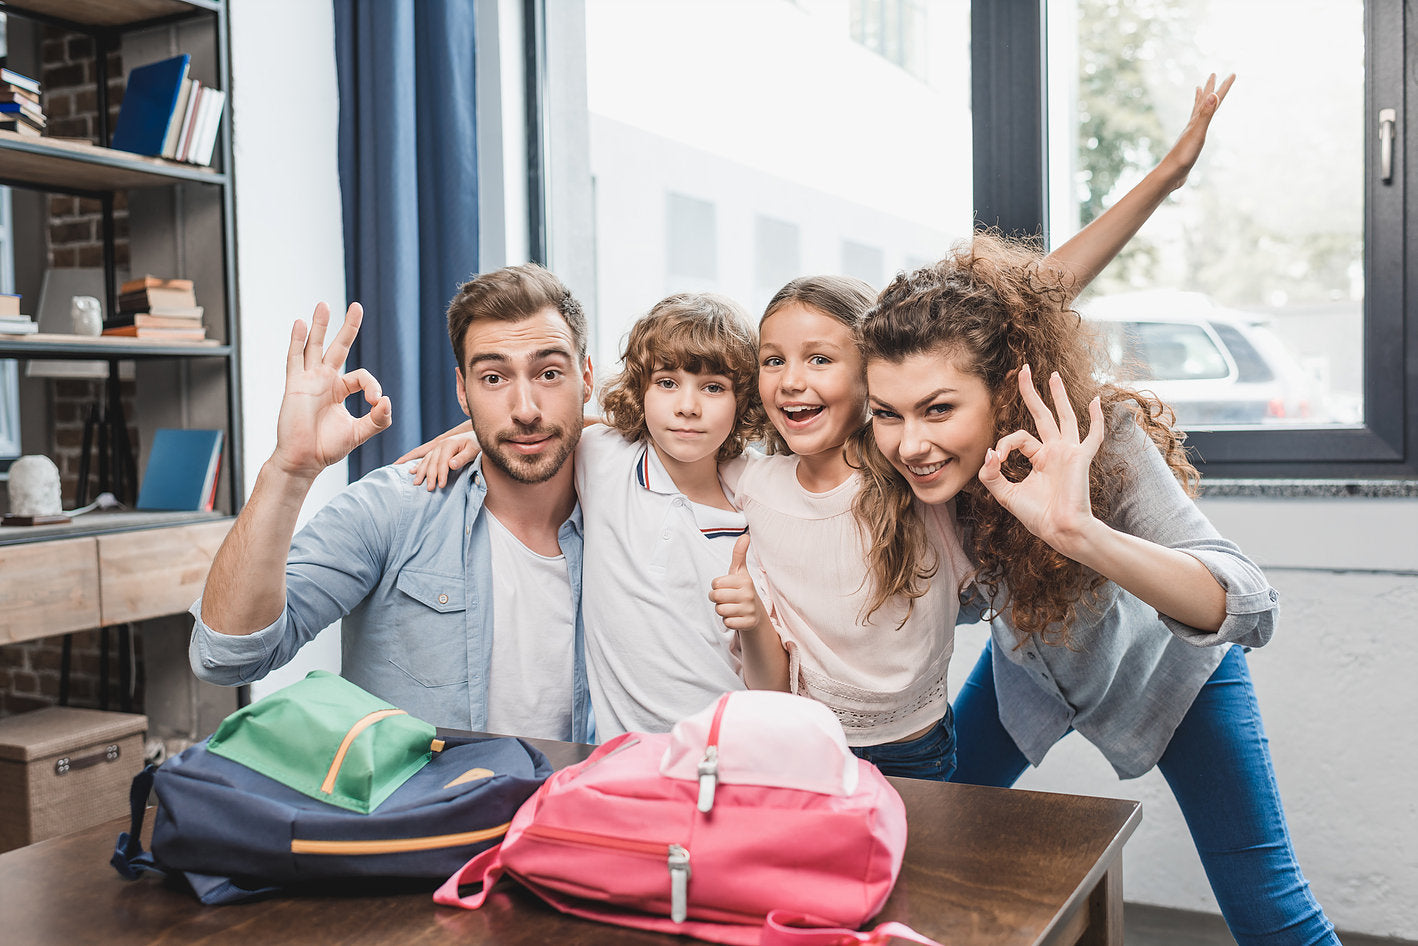 Prêts pour l'école: trucs et conseils pour préparer votre enfant à la rentrée scolaire